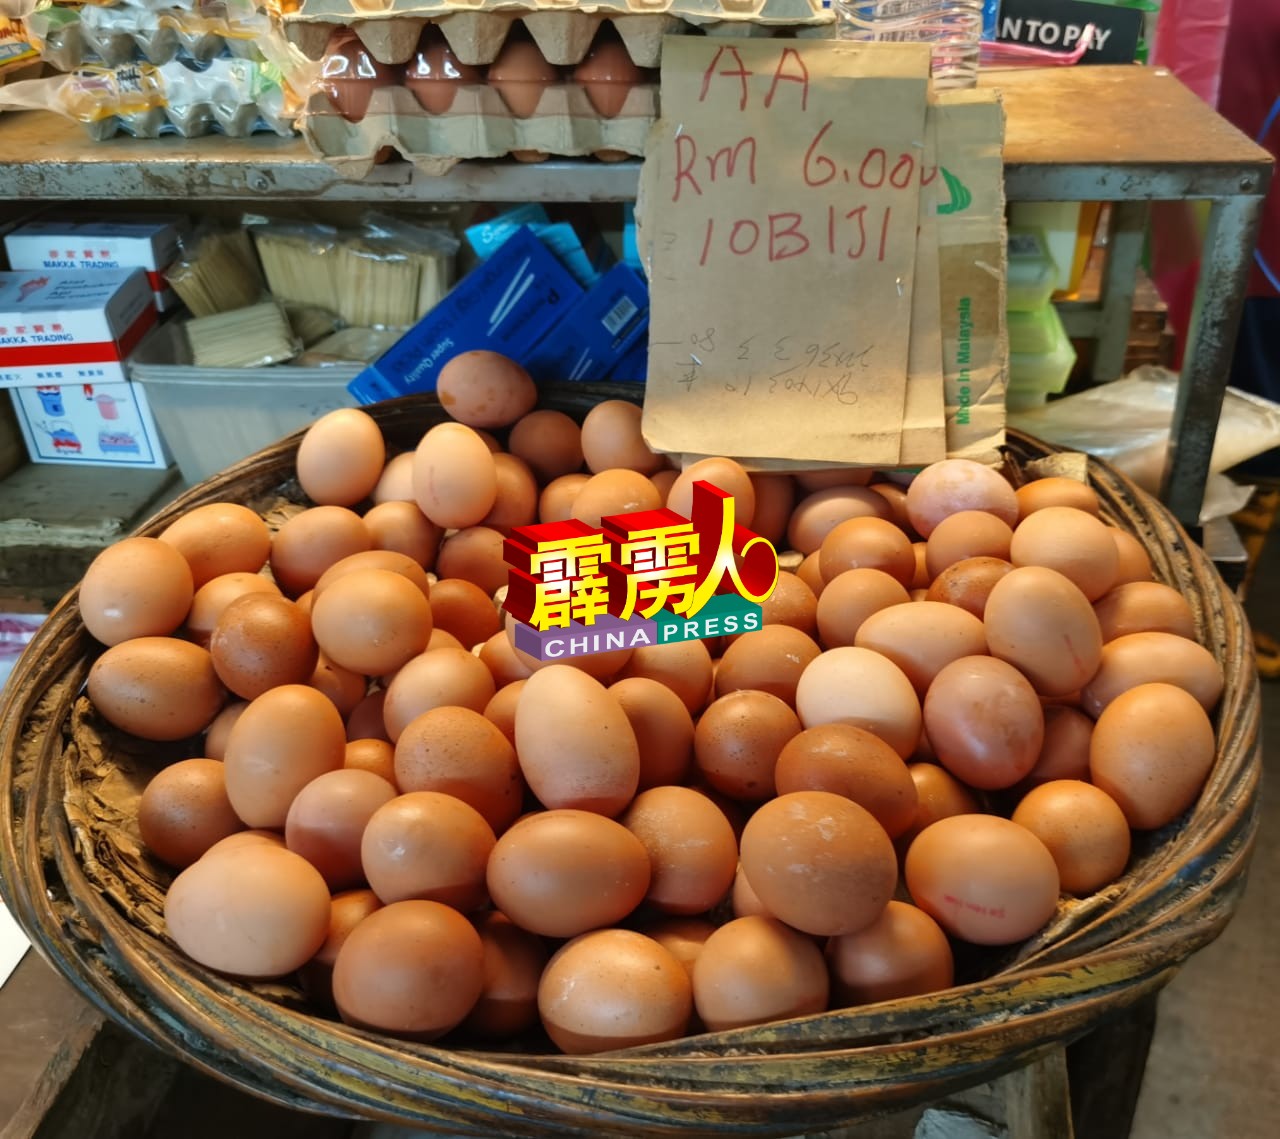 部分AA的鸡蛋卖至60仙一个。